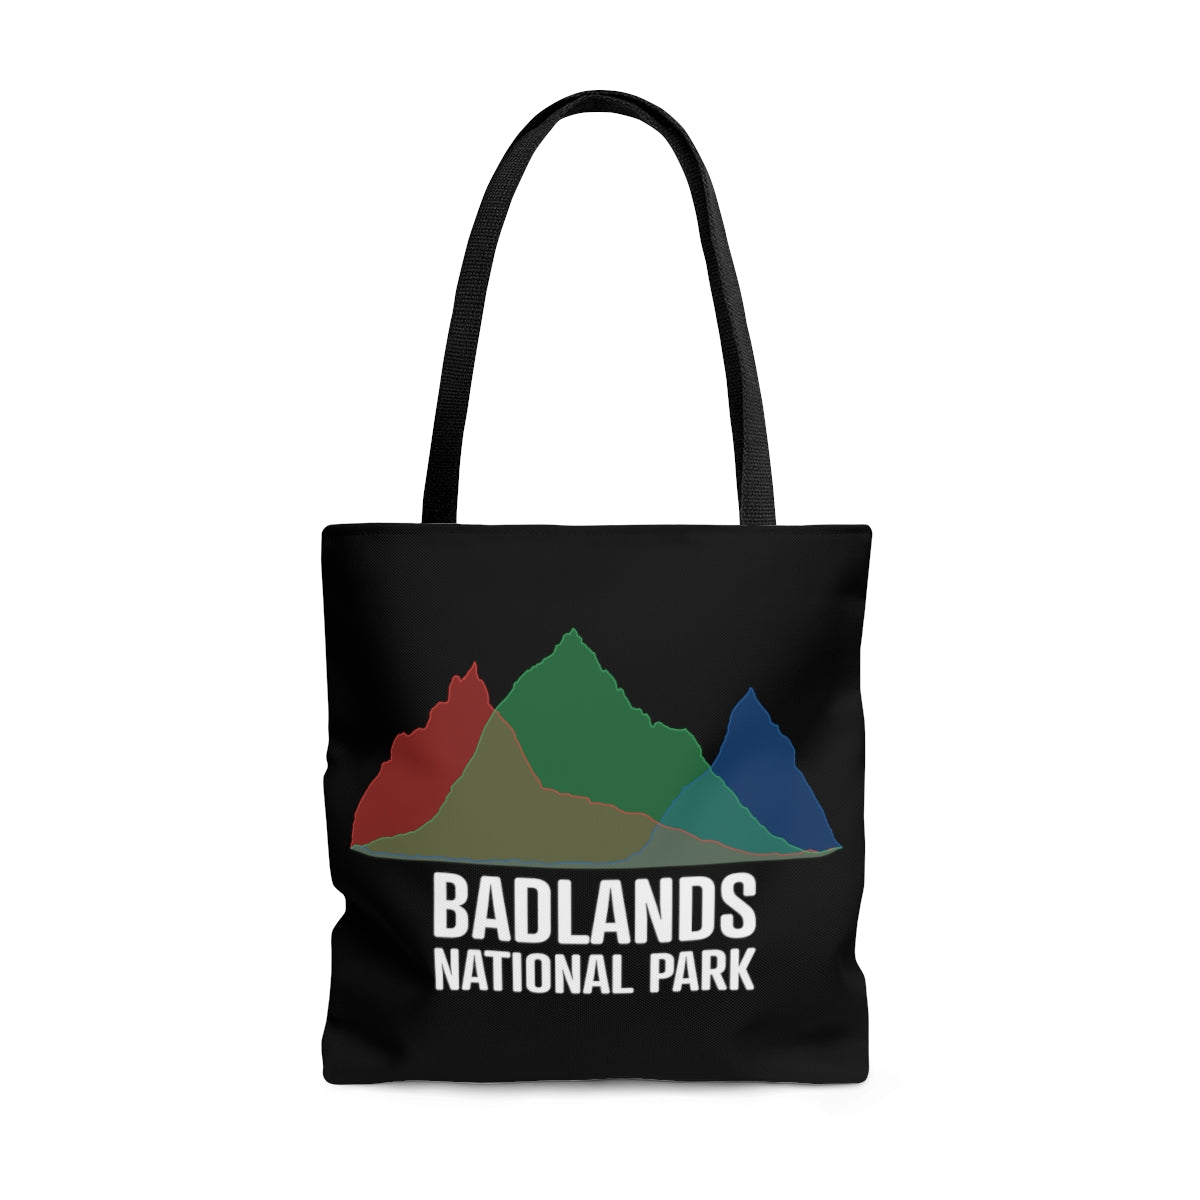 Badlands National Park Tote Bag - Histogram